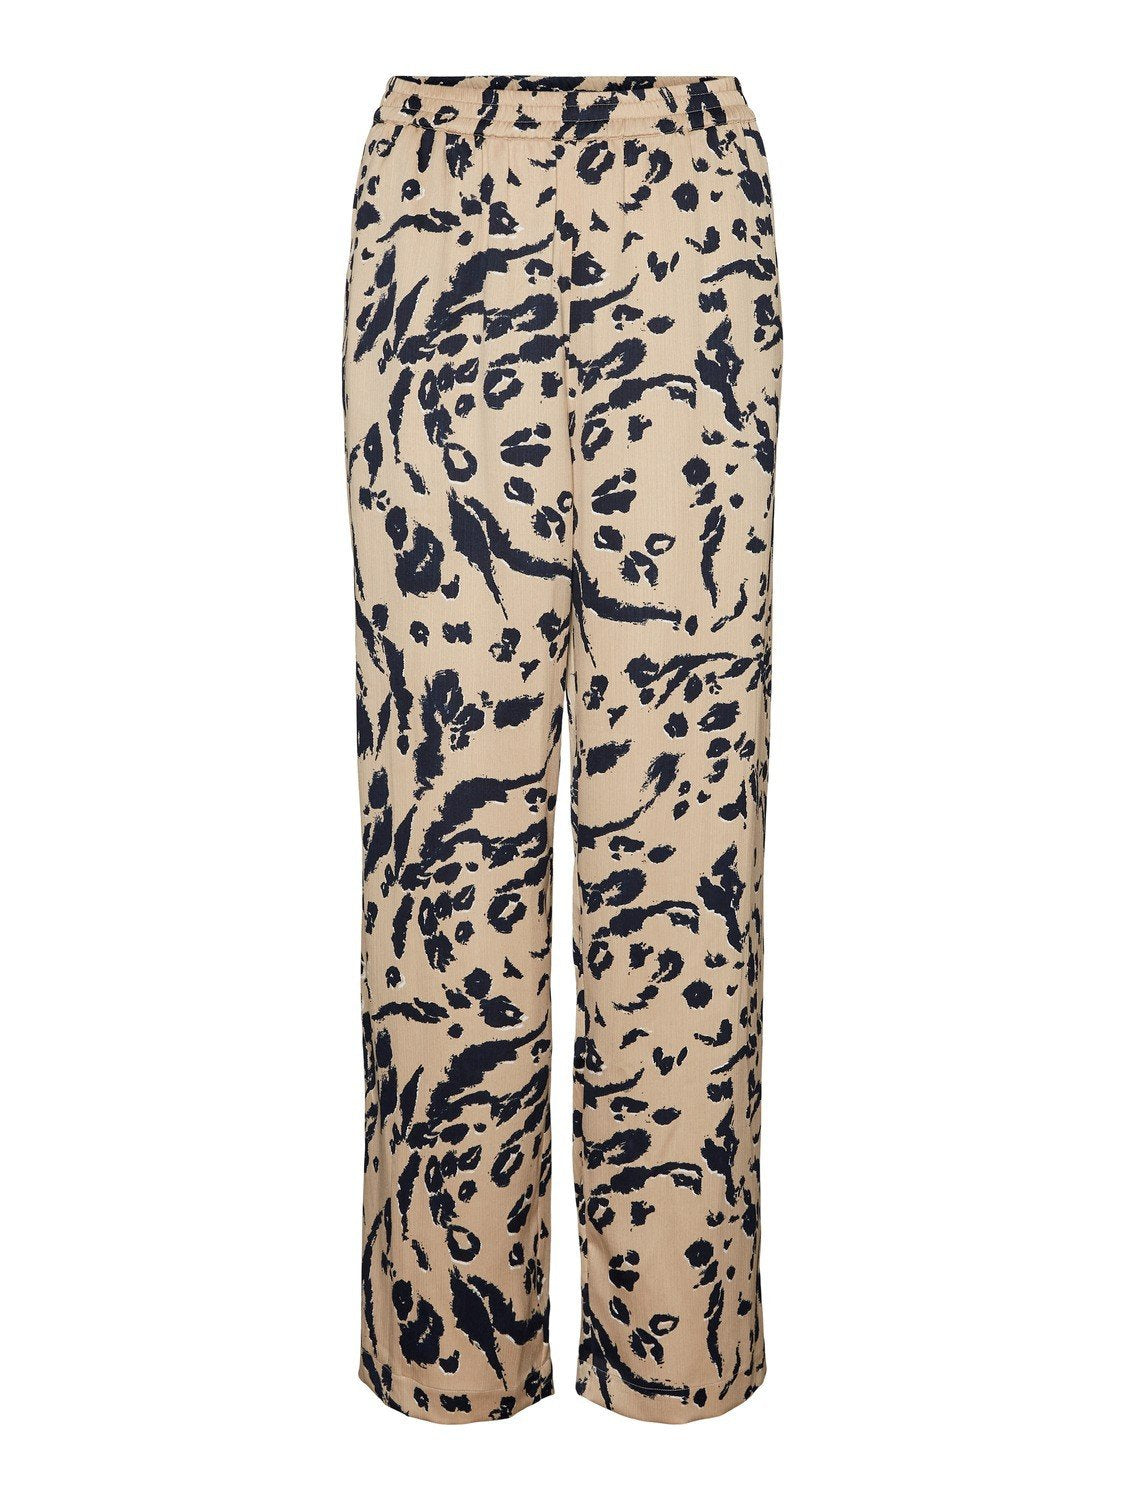 Pantalon léger fluide imprimé léopard